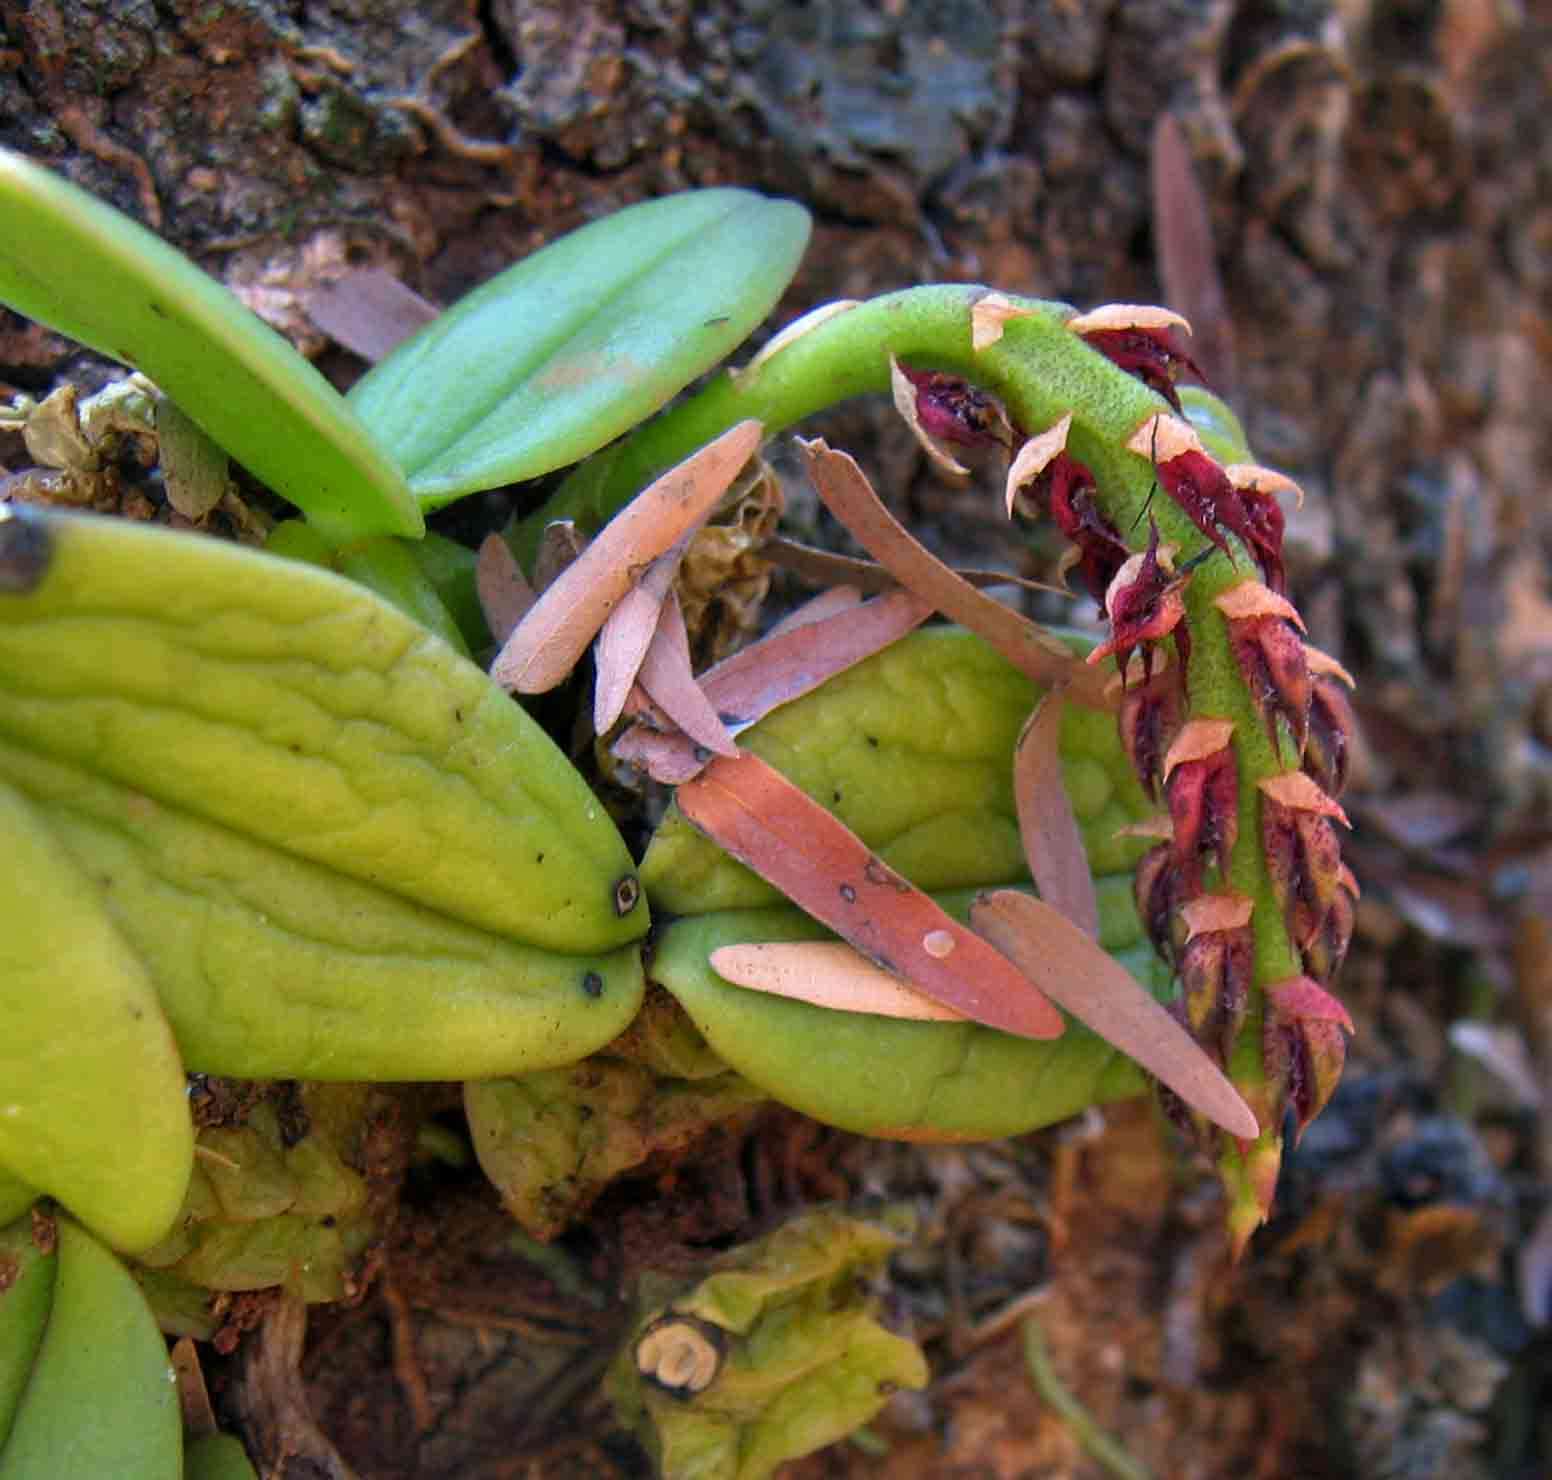 Image of Bulbophyllum elliotii Rolfe